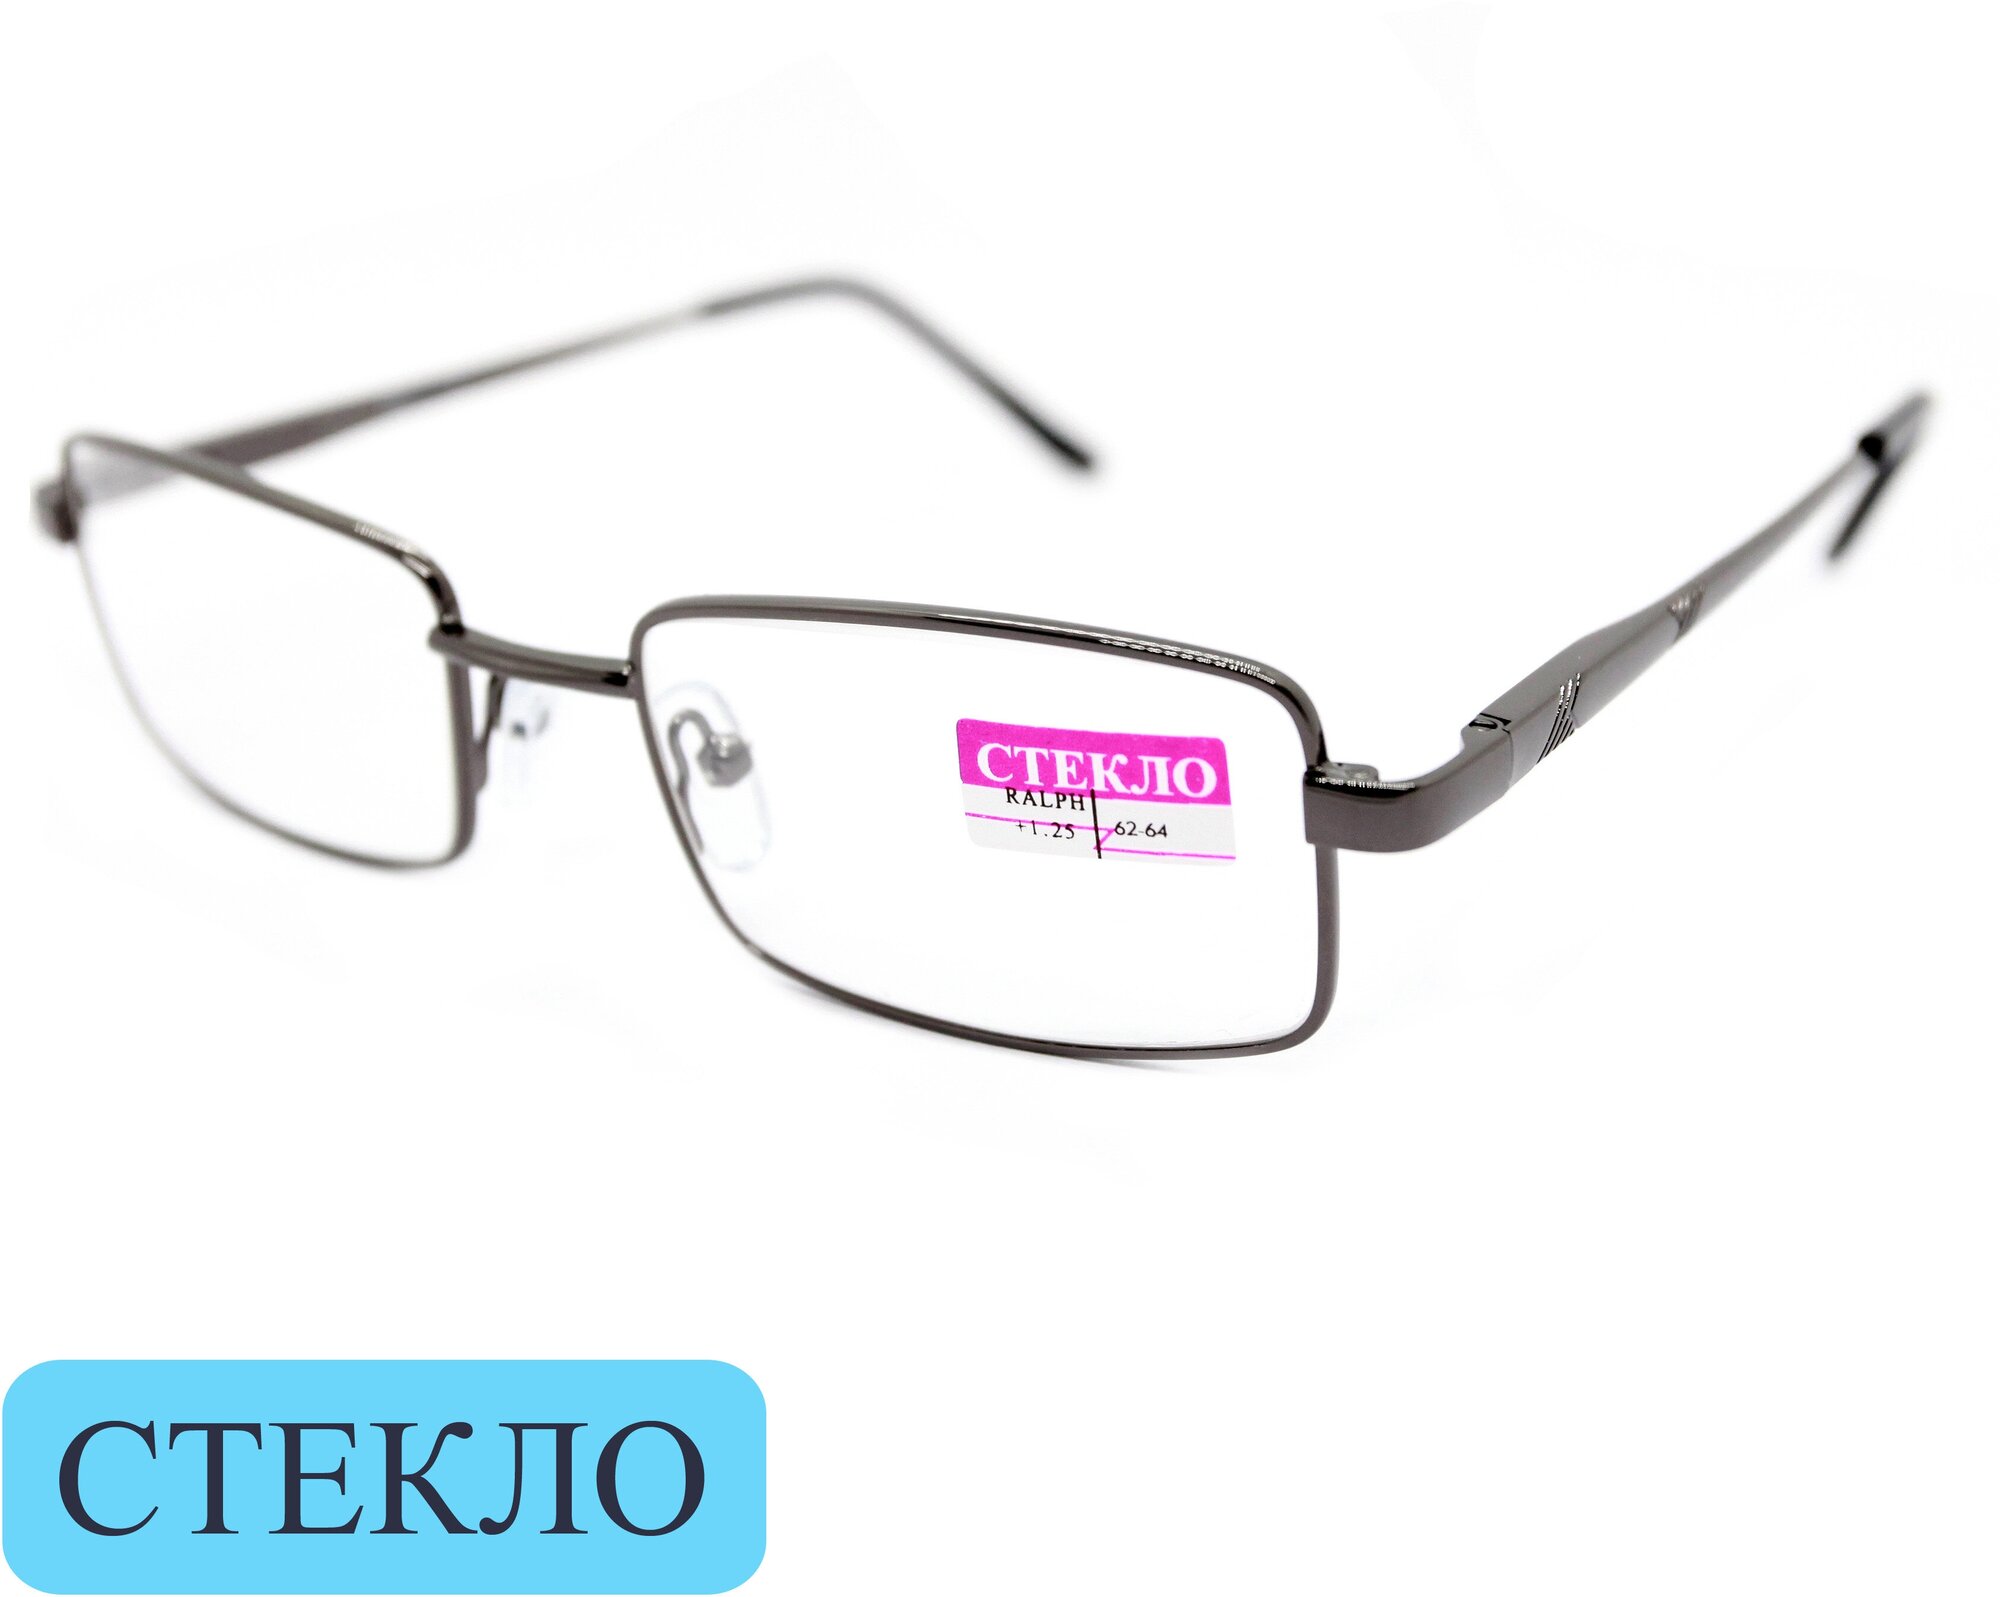 Корригирующие очки для чтения (+3.25) Ralph 014, линза стекло, без футляра, цвет серый, РЦ 62-64